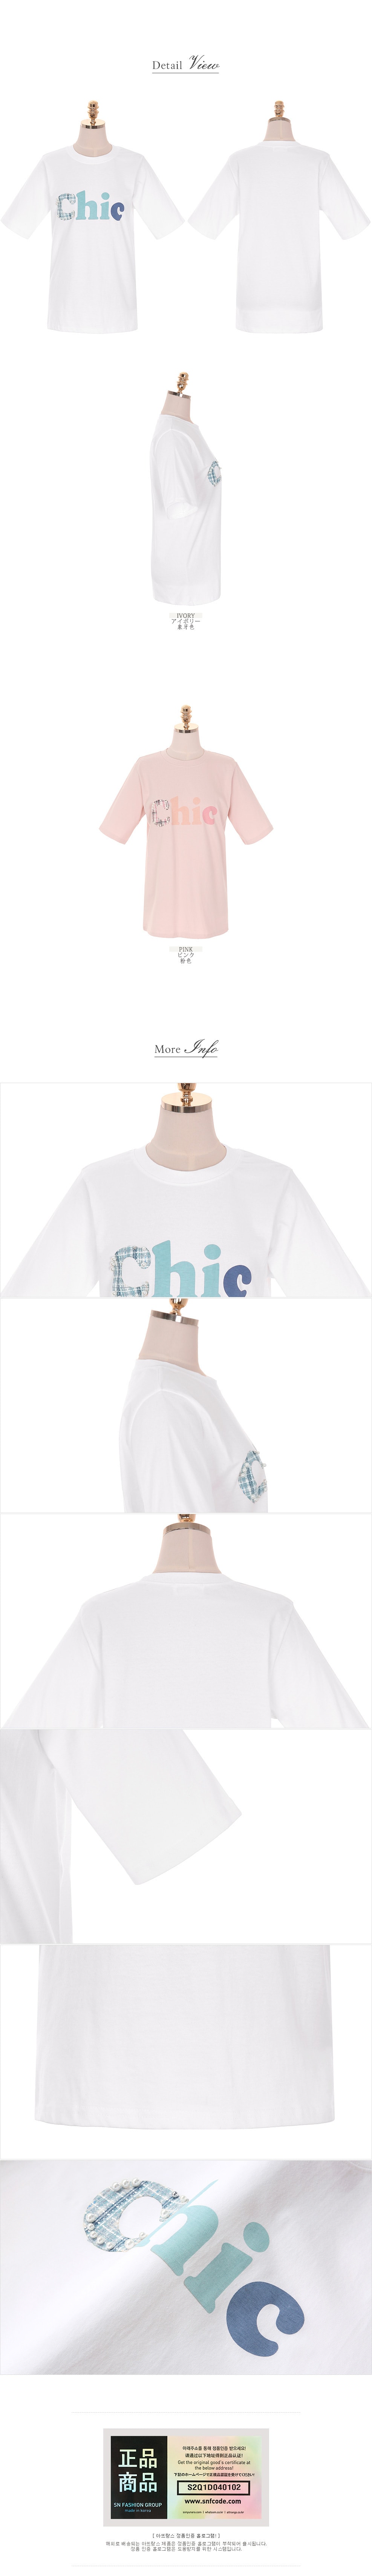 【韩国直邮】ATTRANGS 纯色圆领字母图案chicT恤 乳白色 Free